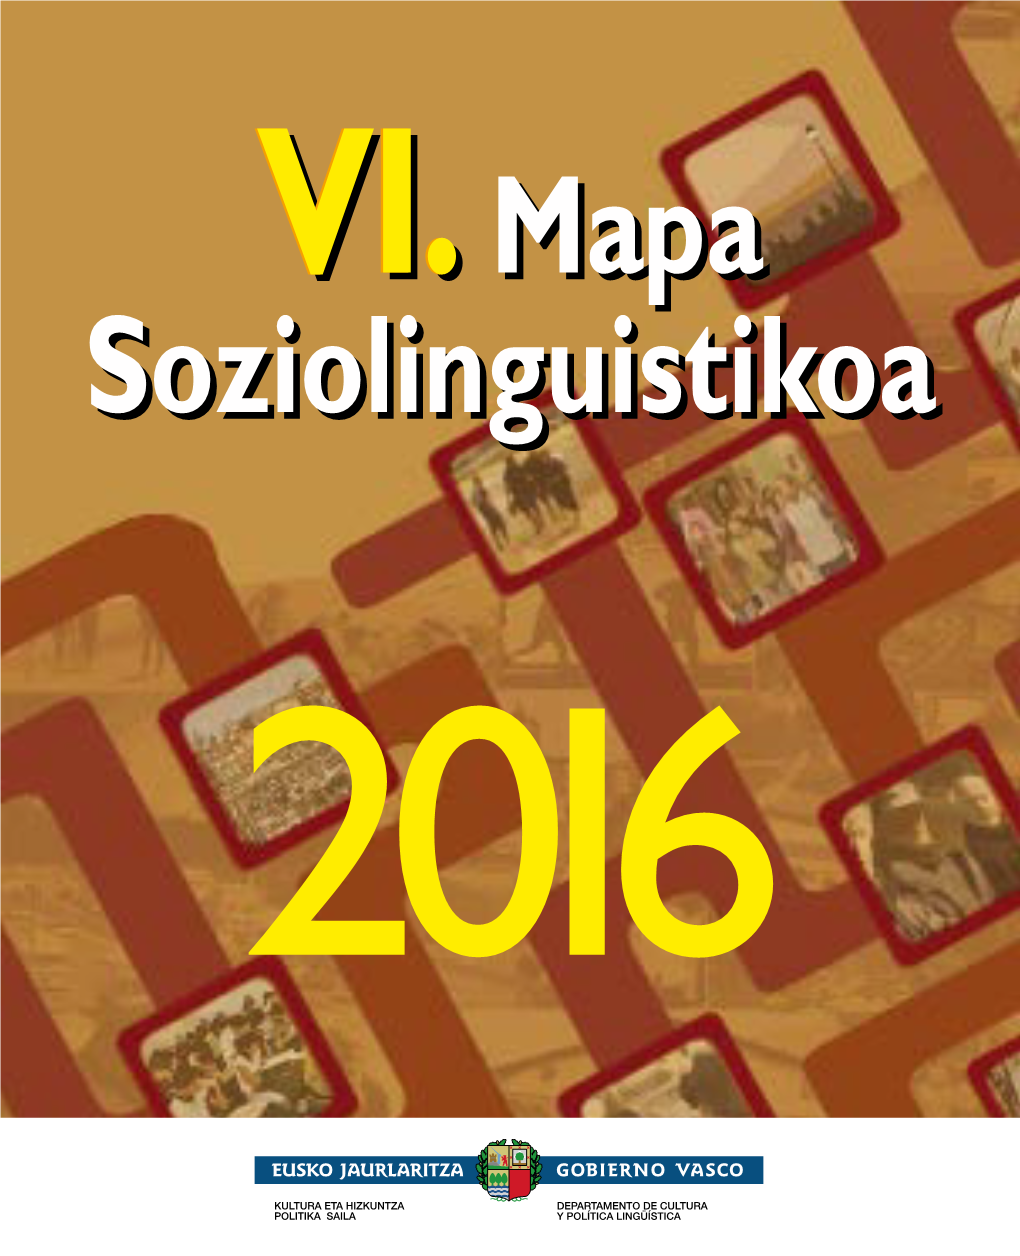 Vi. Mapa Soziolinguistikoa, 2016